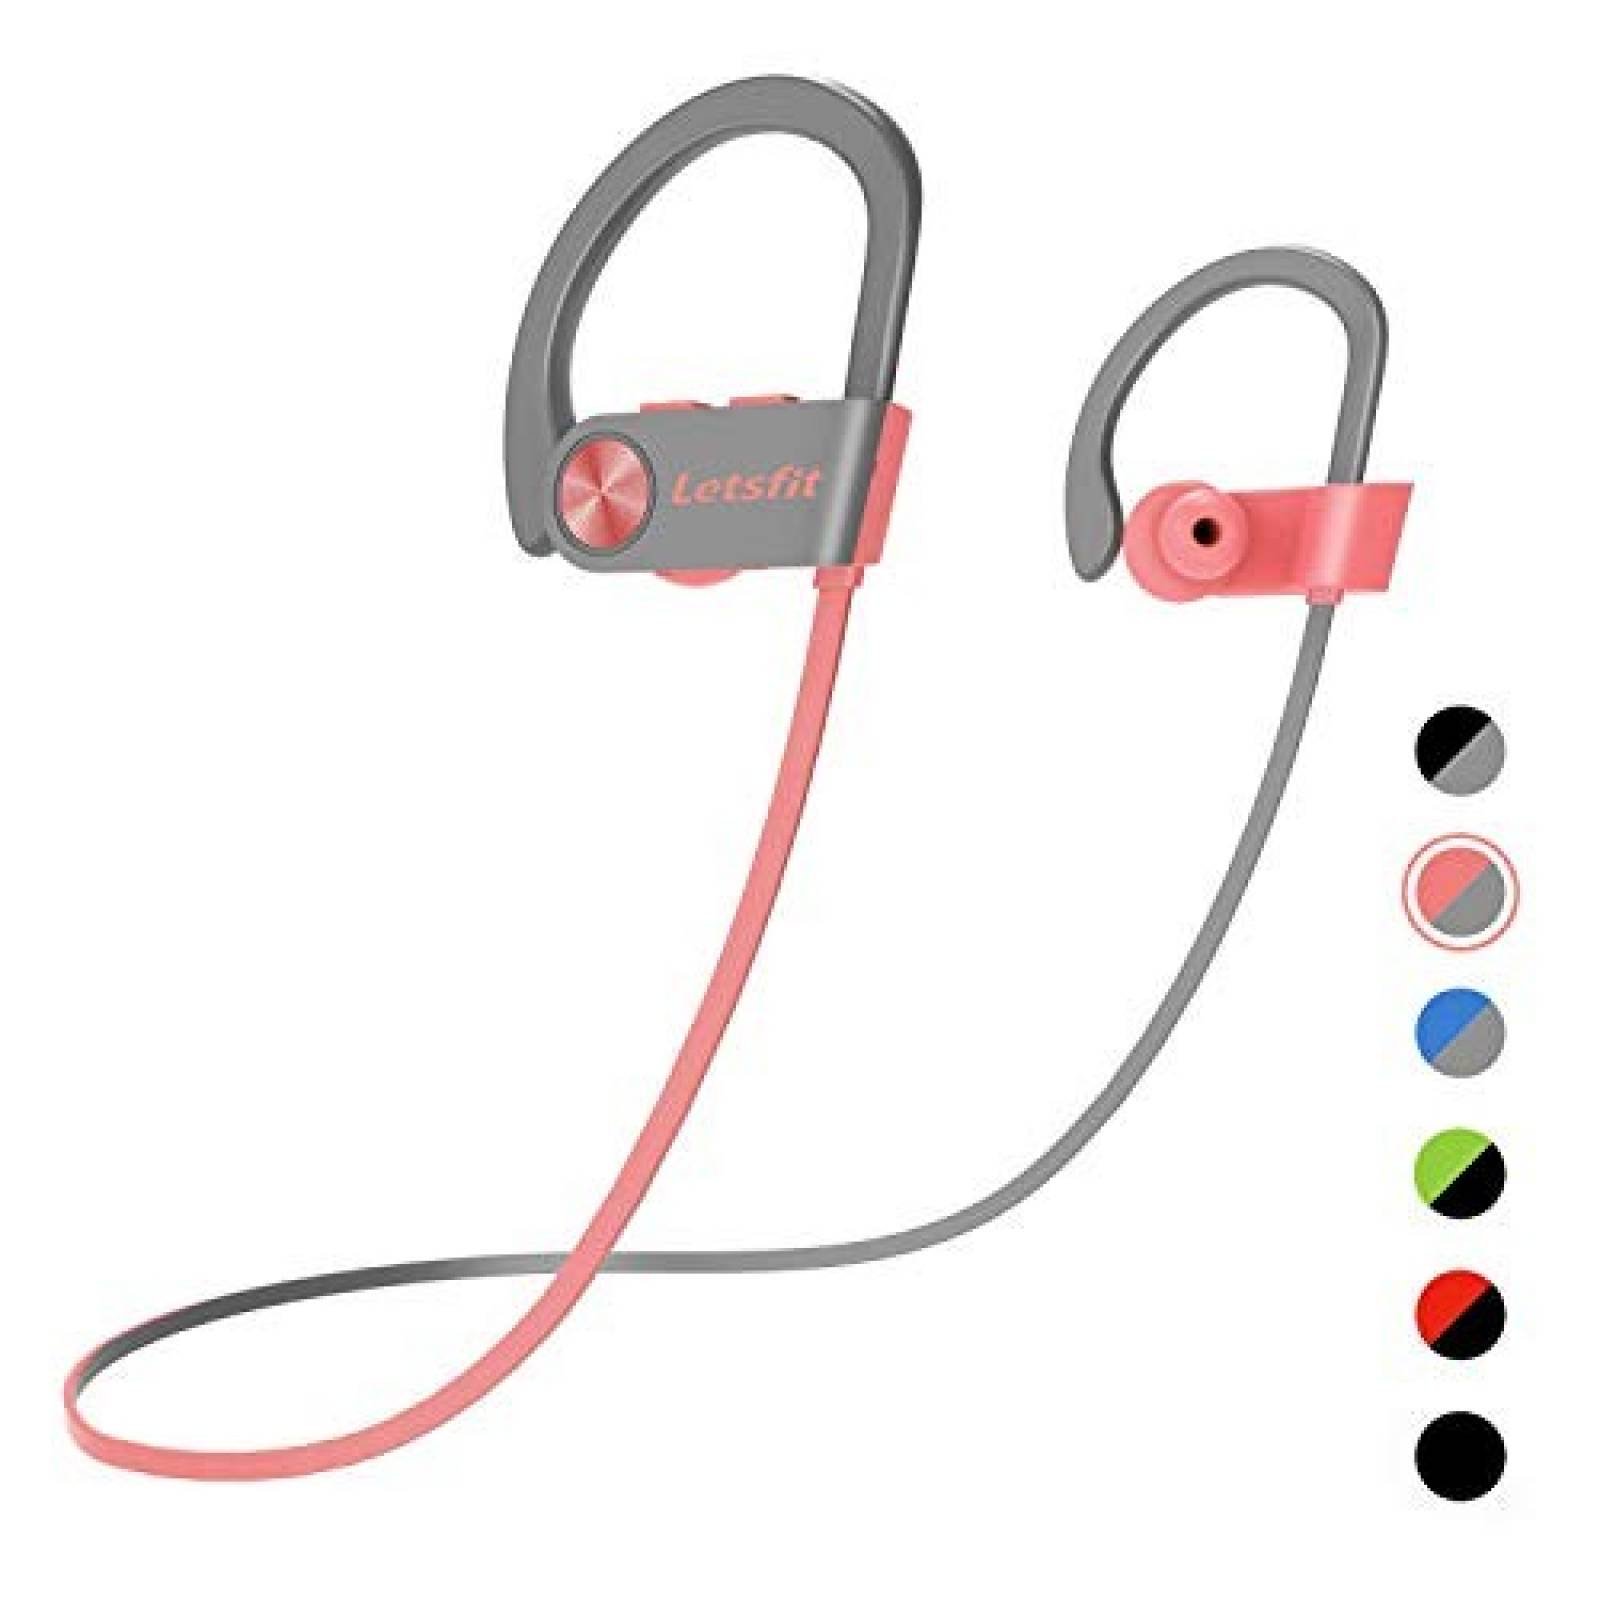 Audifonos Letsfit Bluetooth 8Hrs Impermeables -Rosa/Gris